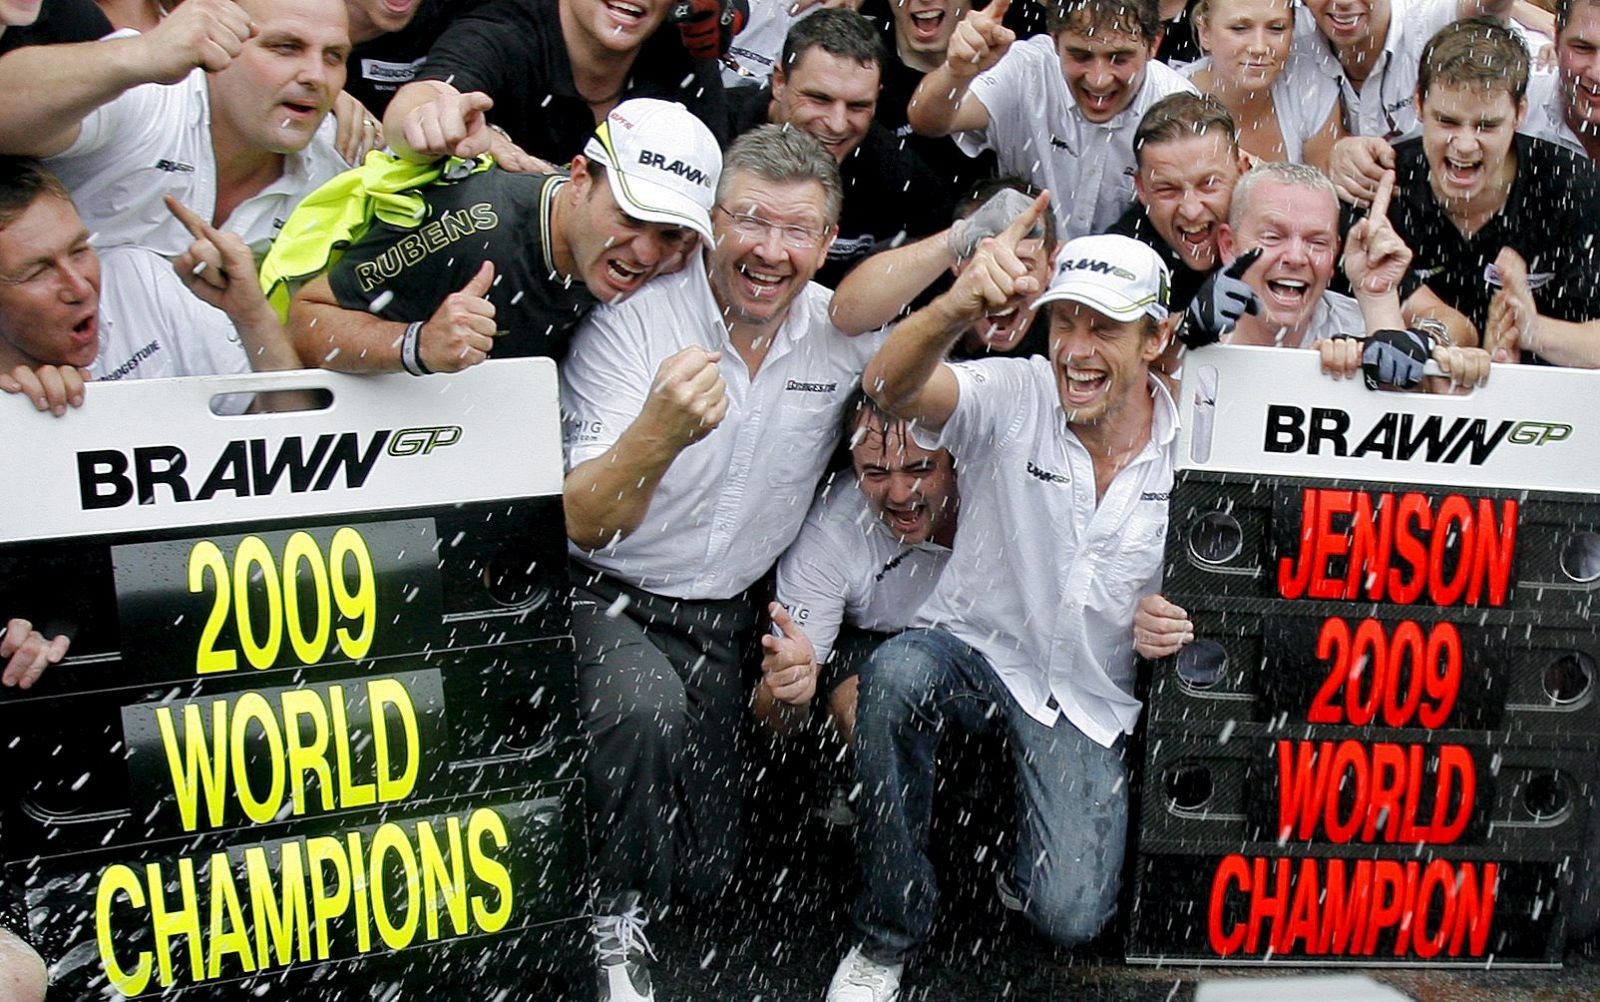 Ross Brawn, en el centro, celebra el título con sus pilotos, Barrichello y Button.